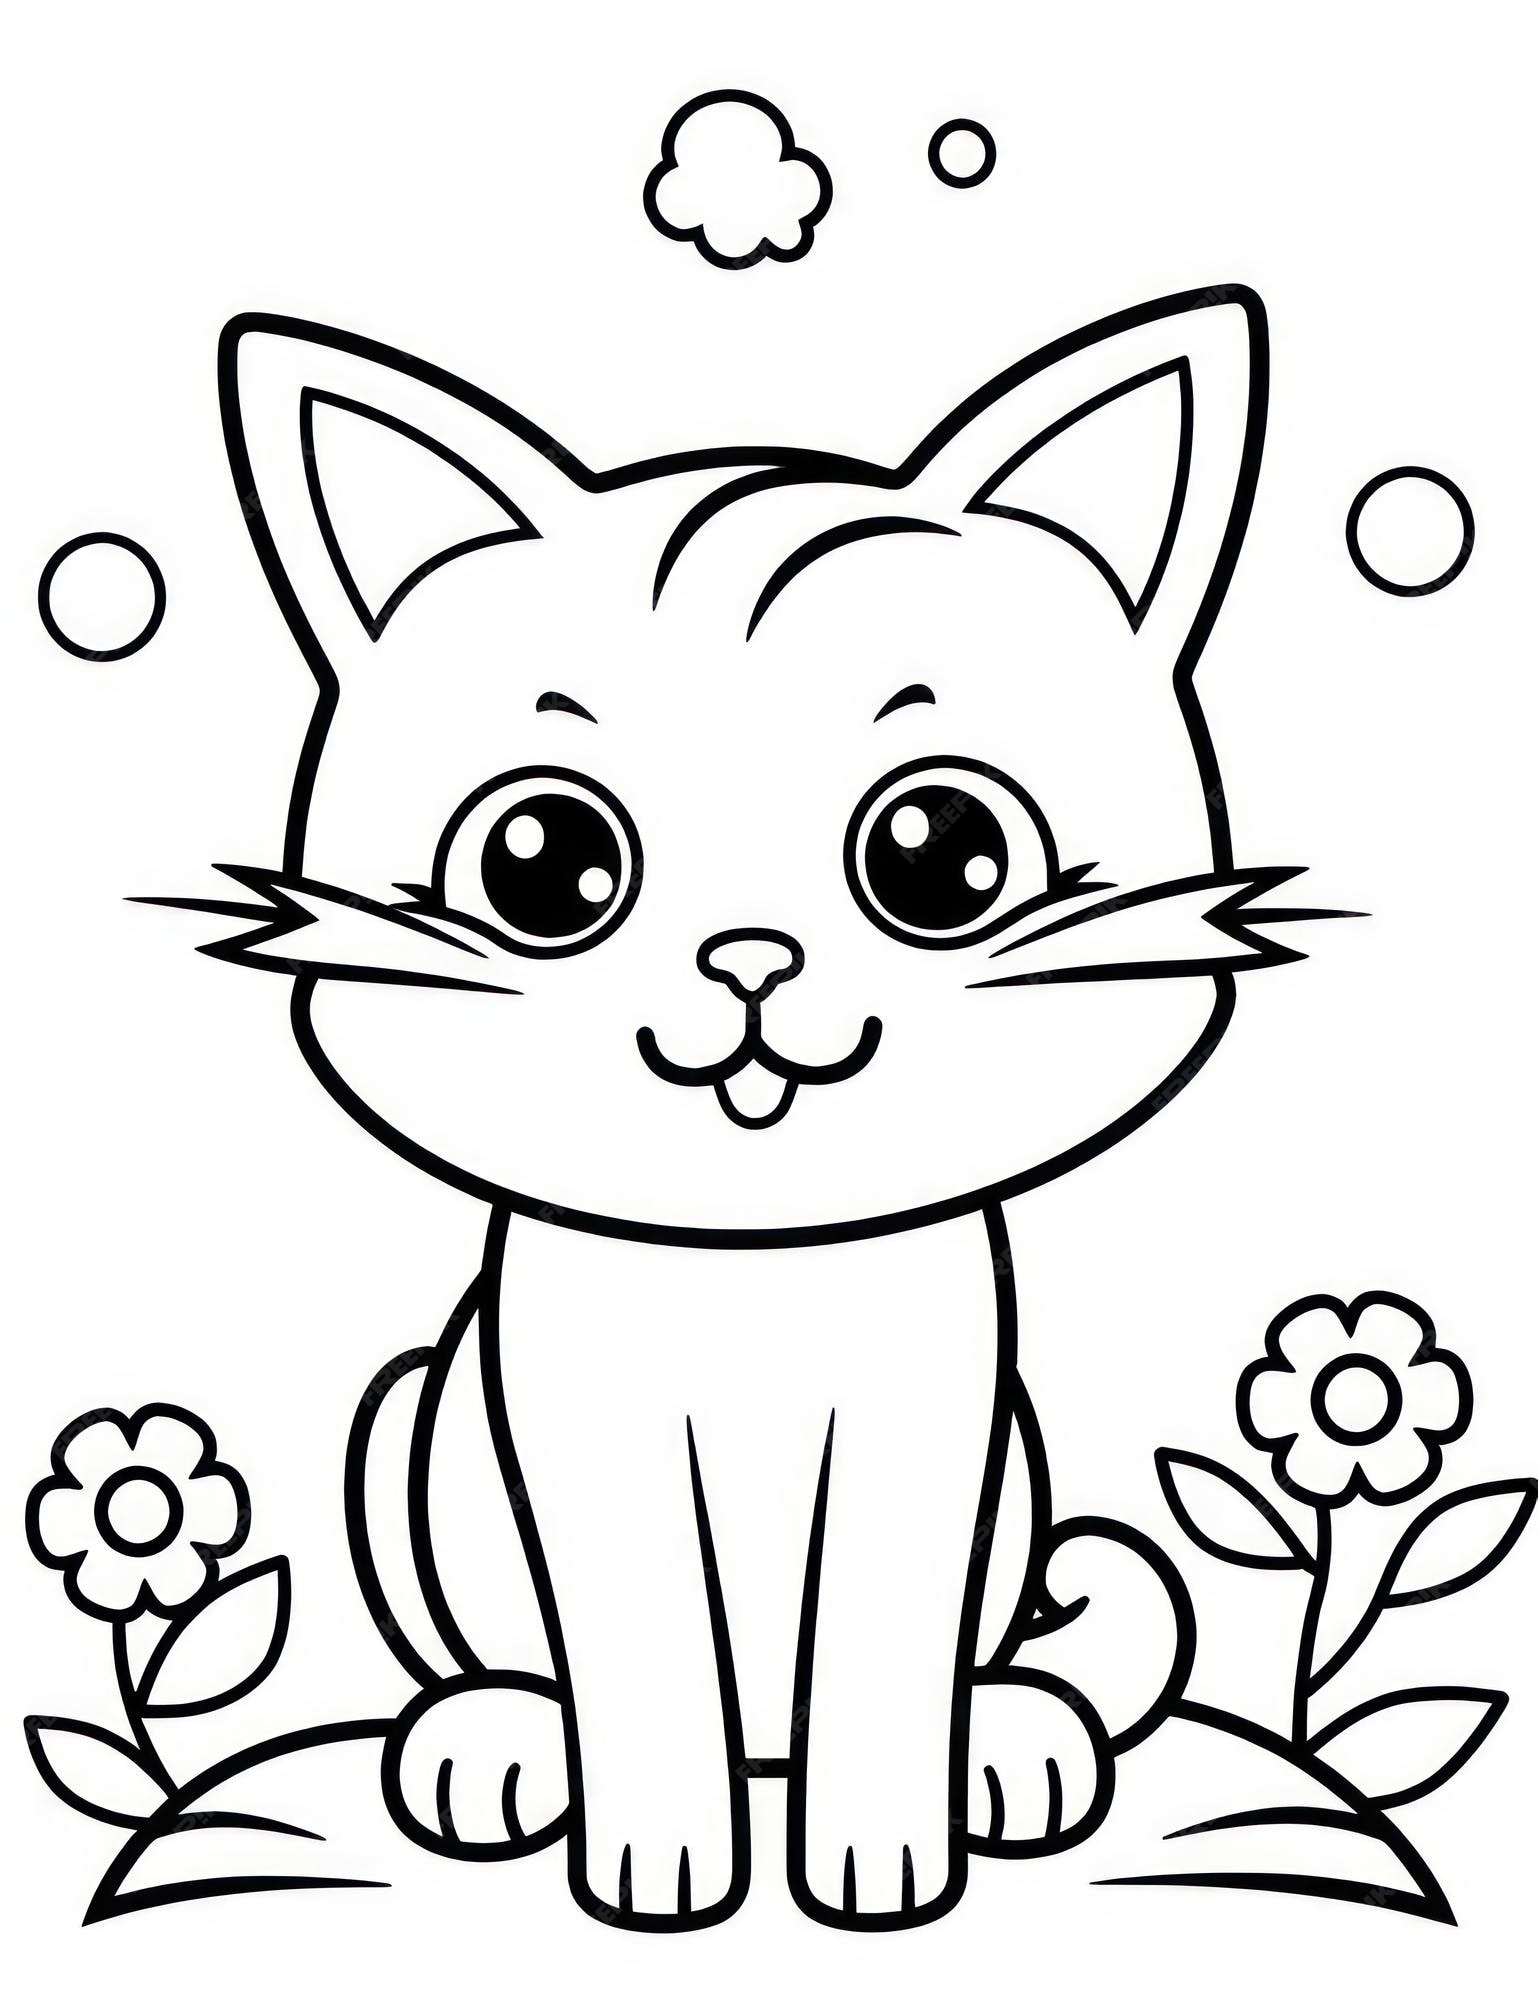 Como desenhar um gato FACIL passo a passo para crianças e iniciantes 2 